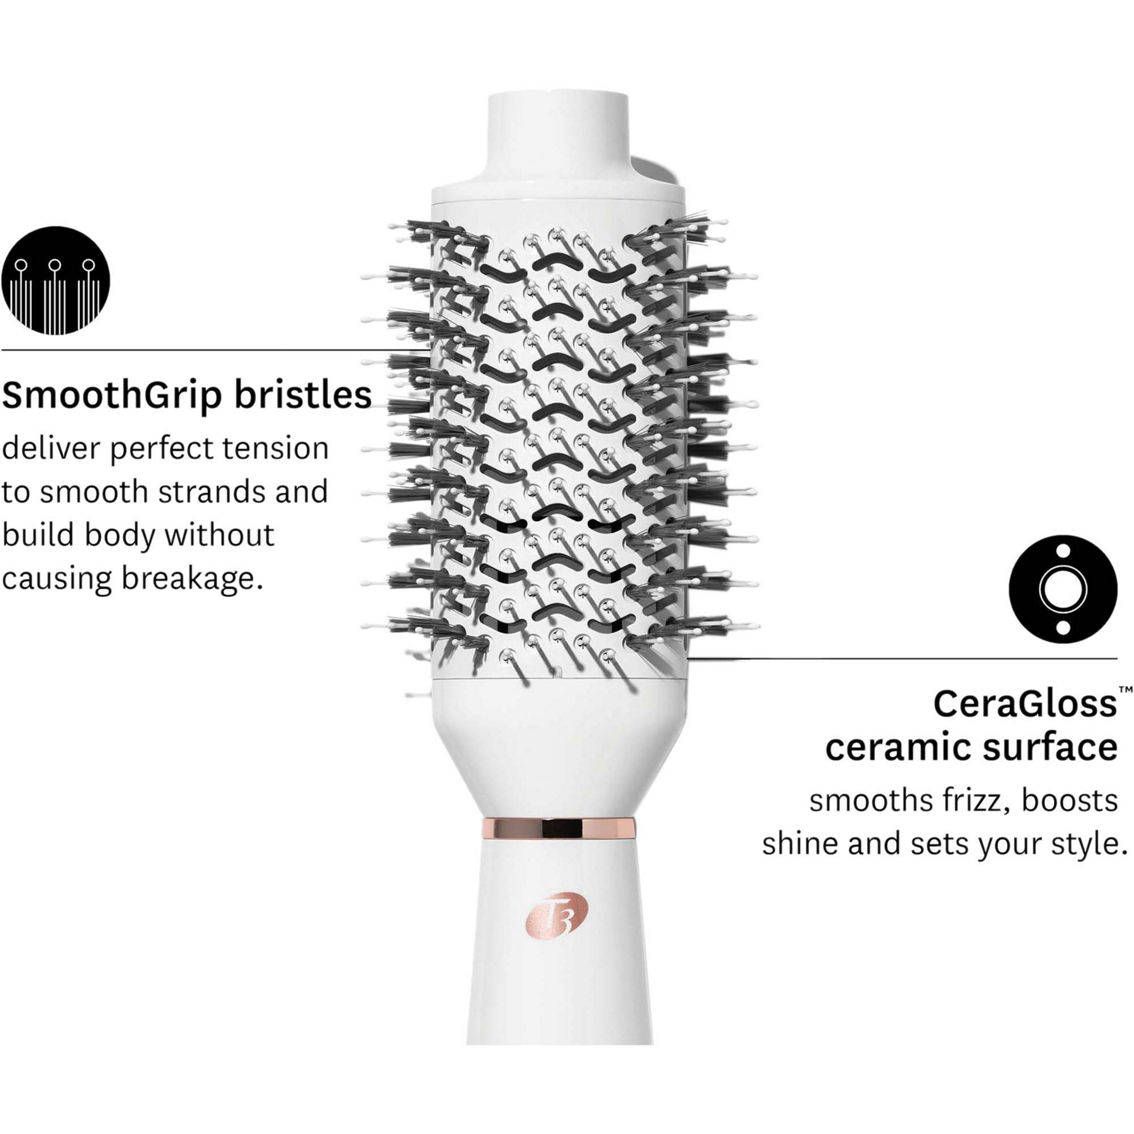 T3 AireBrush One Step Smoothing and Volumizing Hair Dryer Brush - Image 3 of 10